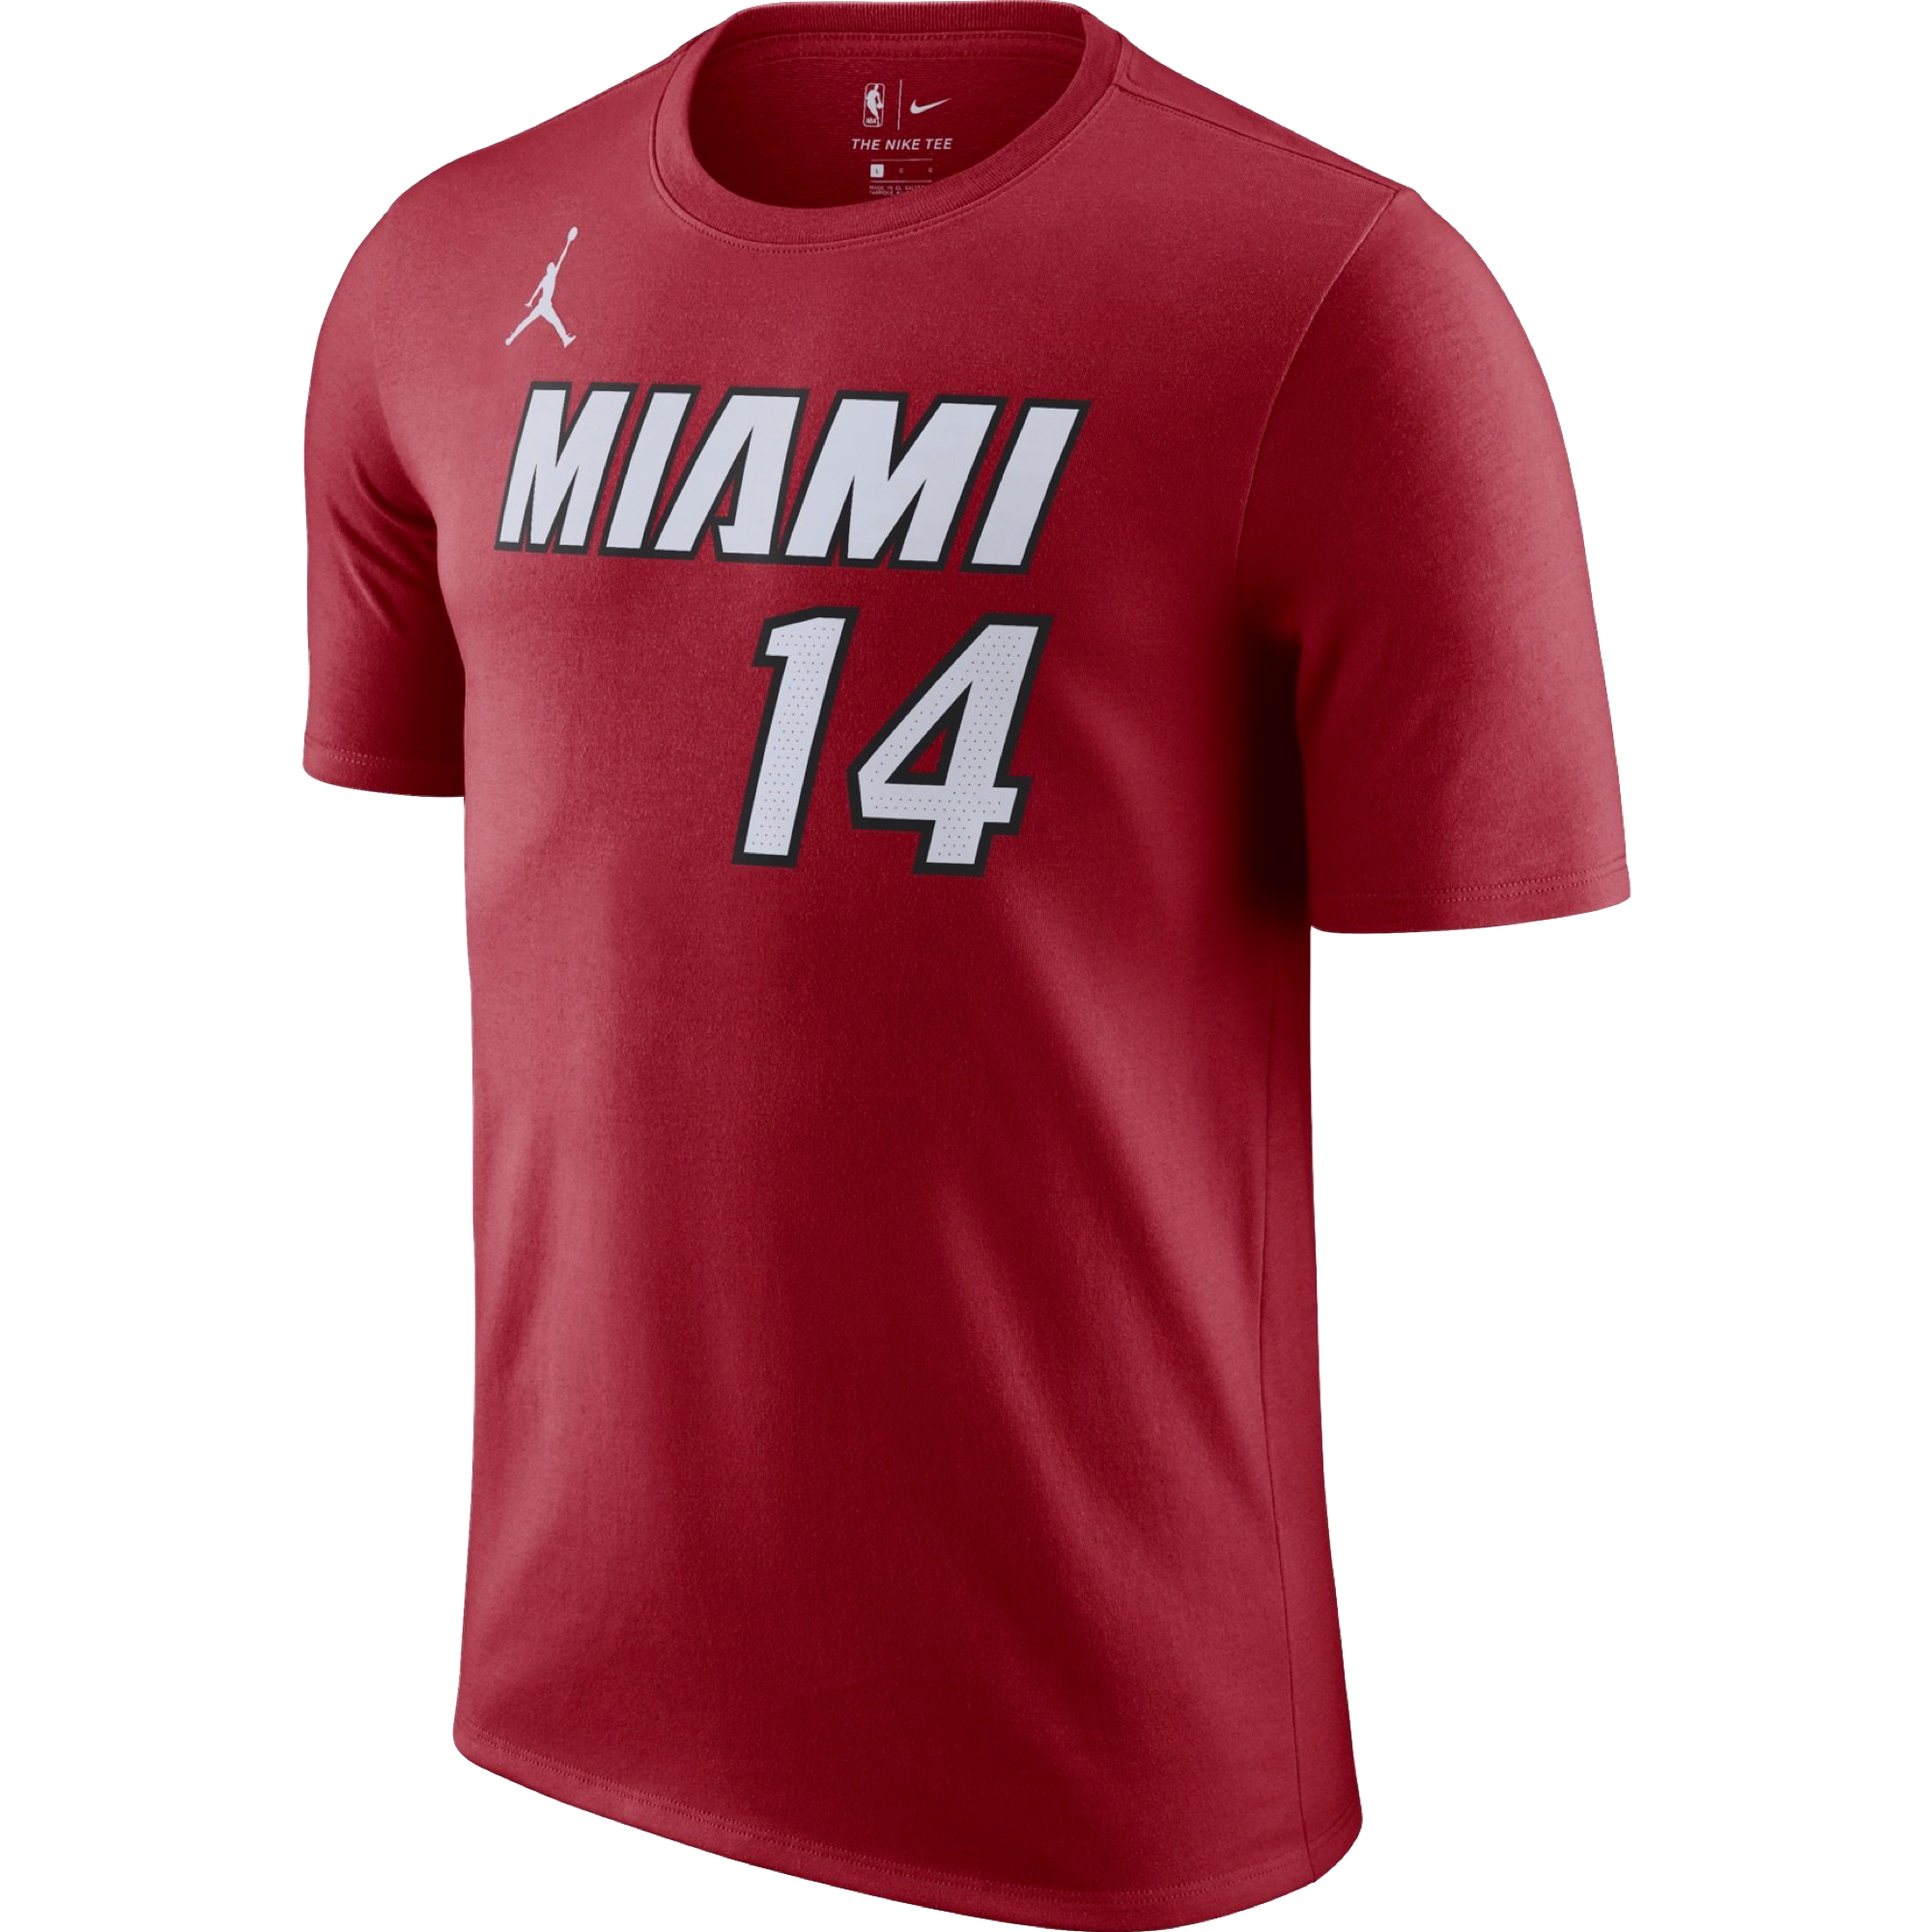 Tyler Herro Nike Miami HEAT Mashup Swingman Jersey - Player's Choice